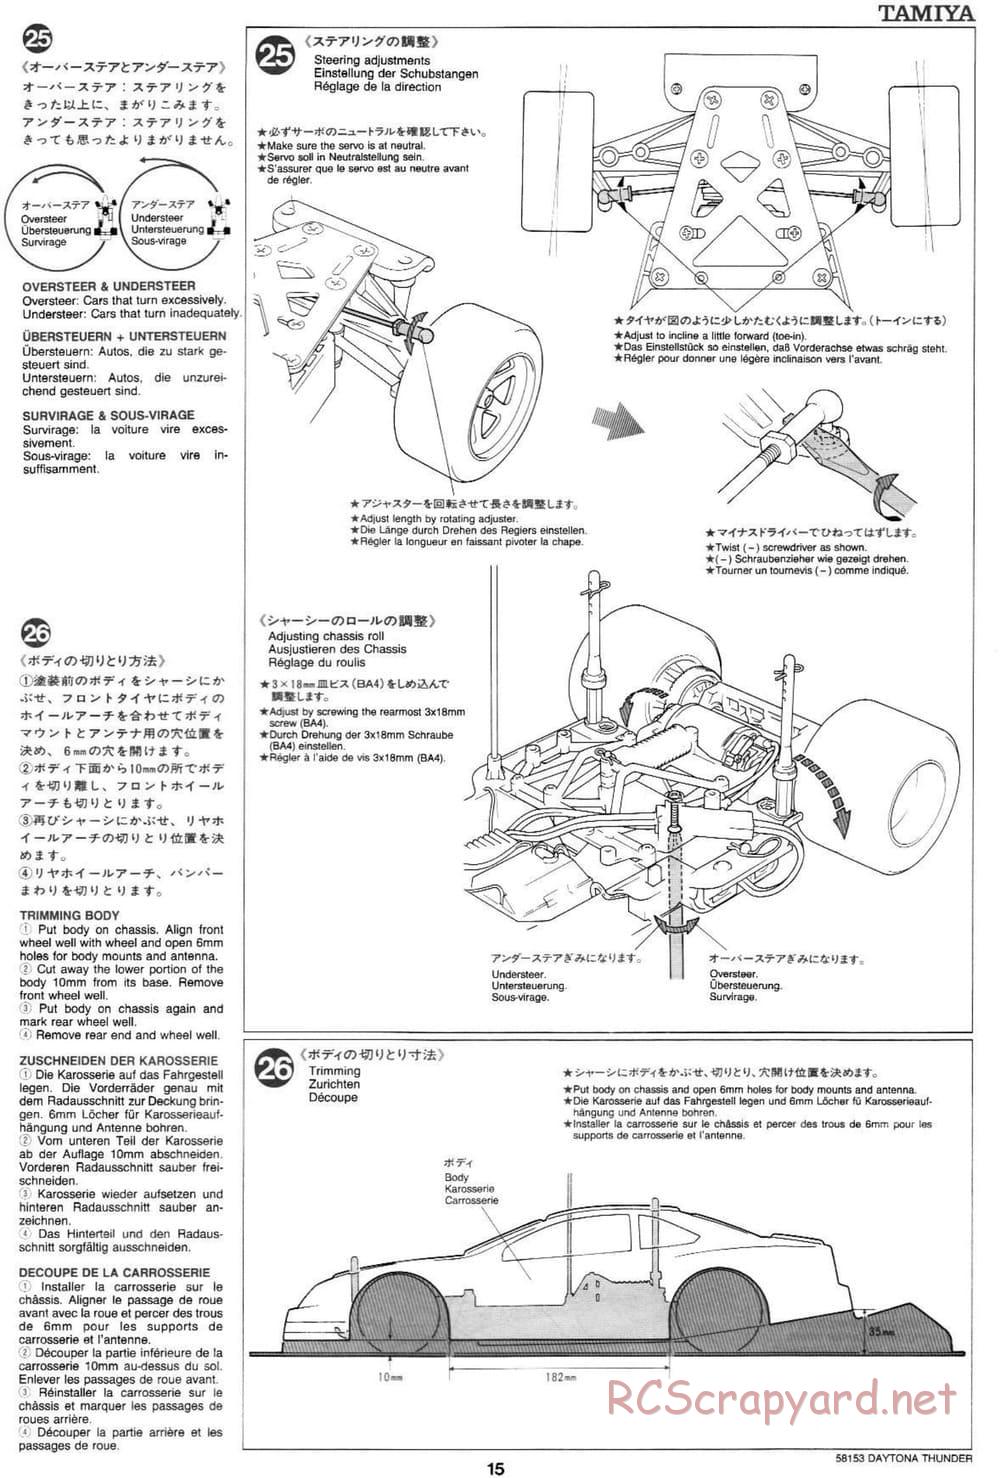 Tamiya - Daytona Thunder - Group-C Chassis - Manual - Page 15